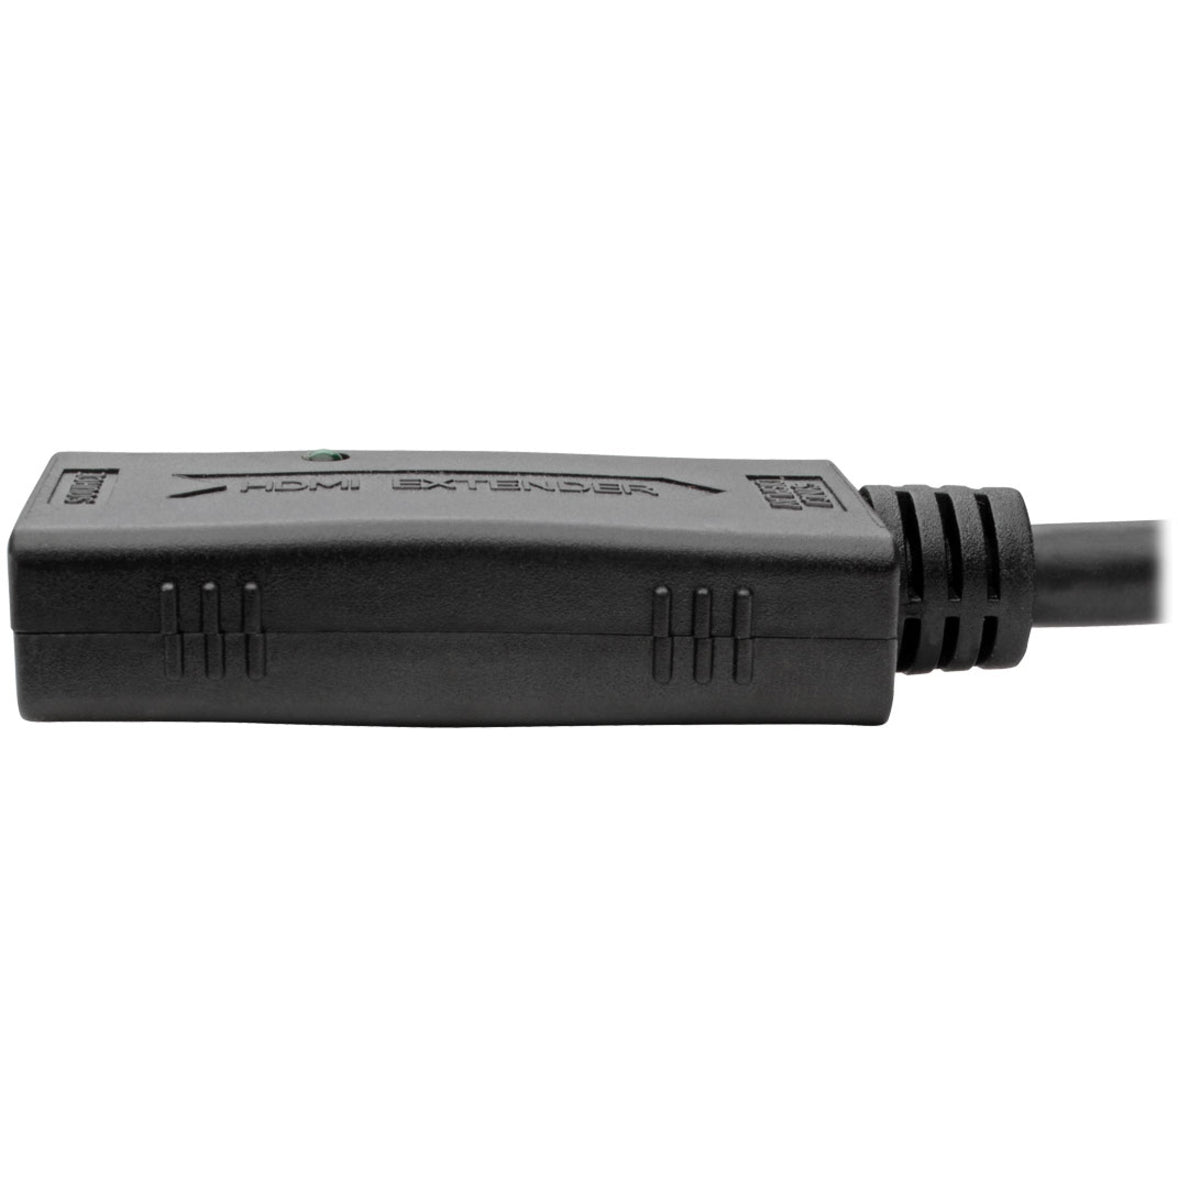 Tripp Lite B123-001 HDMI Attivo Cavo di prolunga 1ft Conduttore in rame Conforme TAA Origine Taiwan.